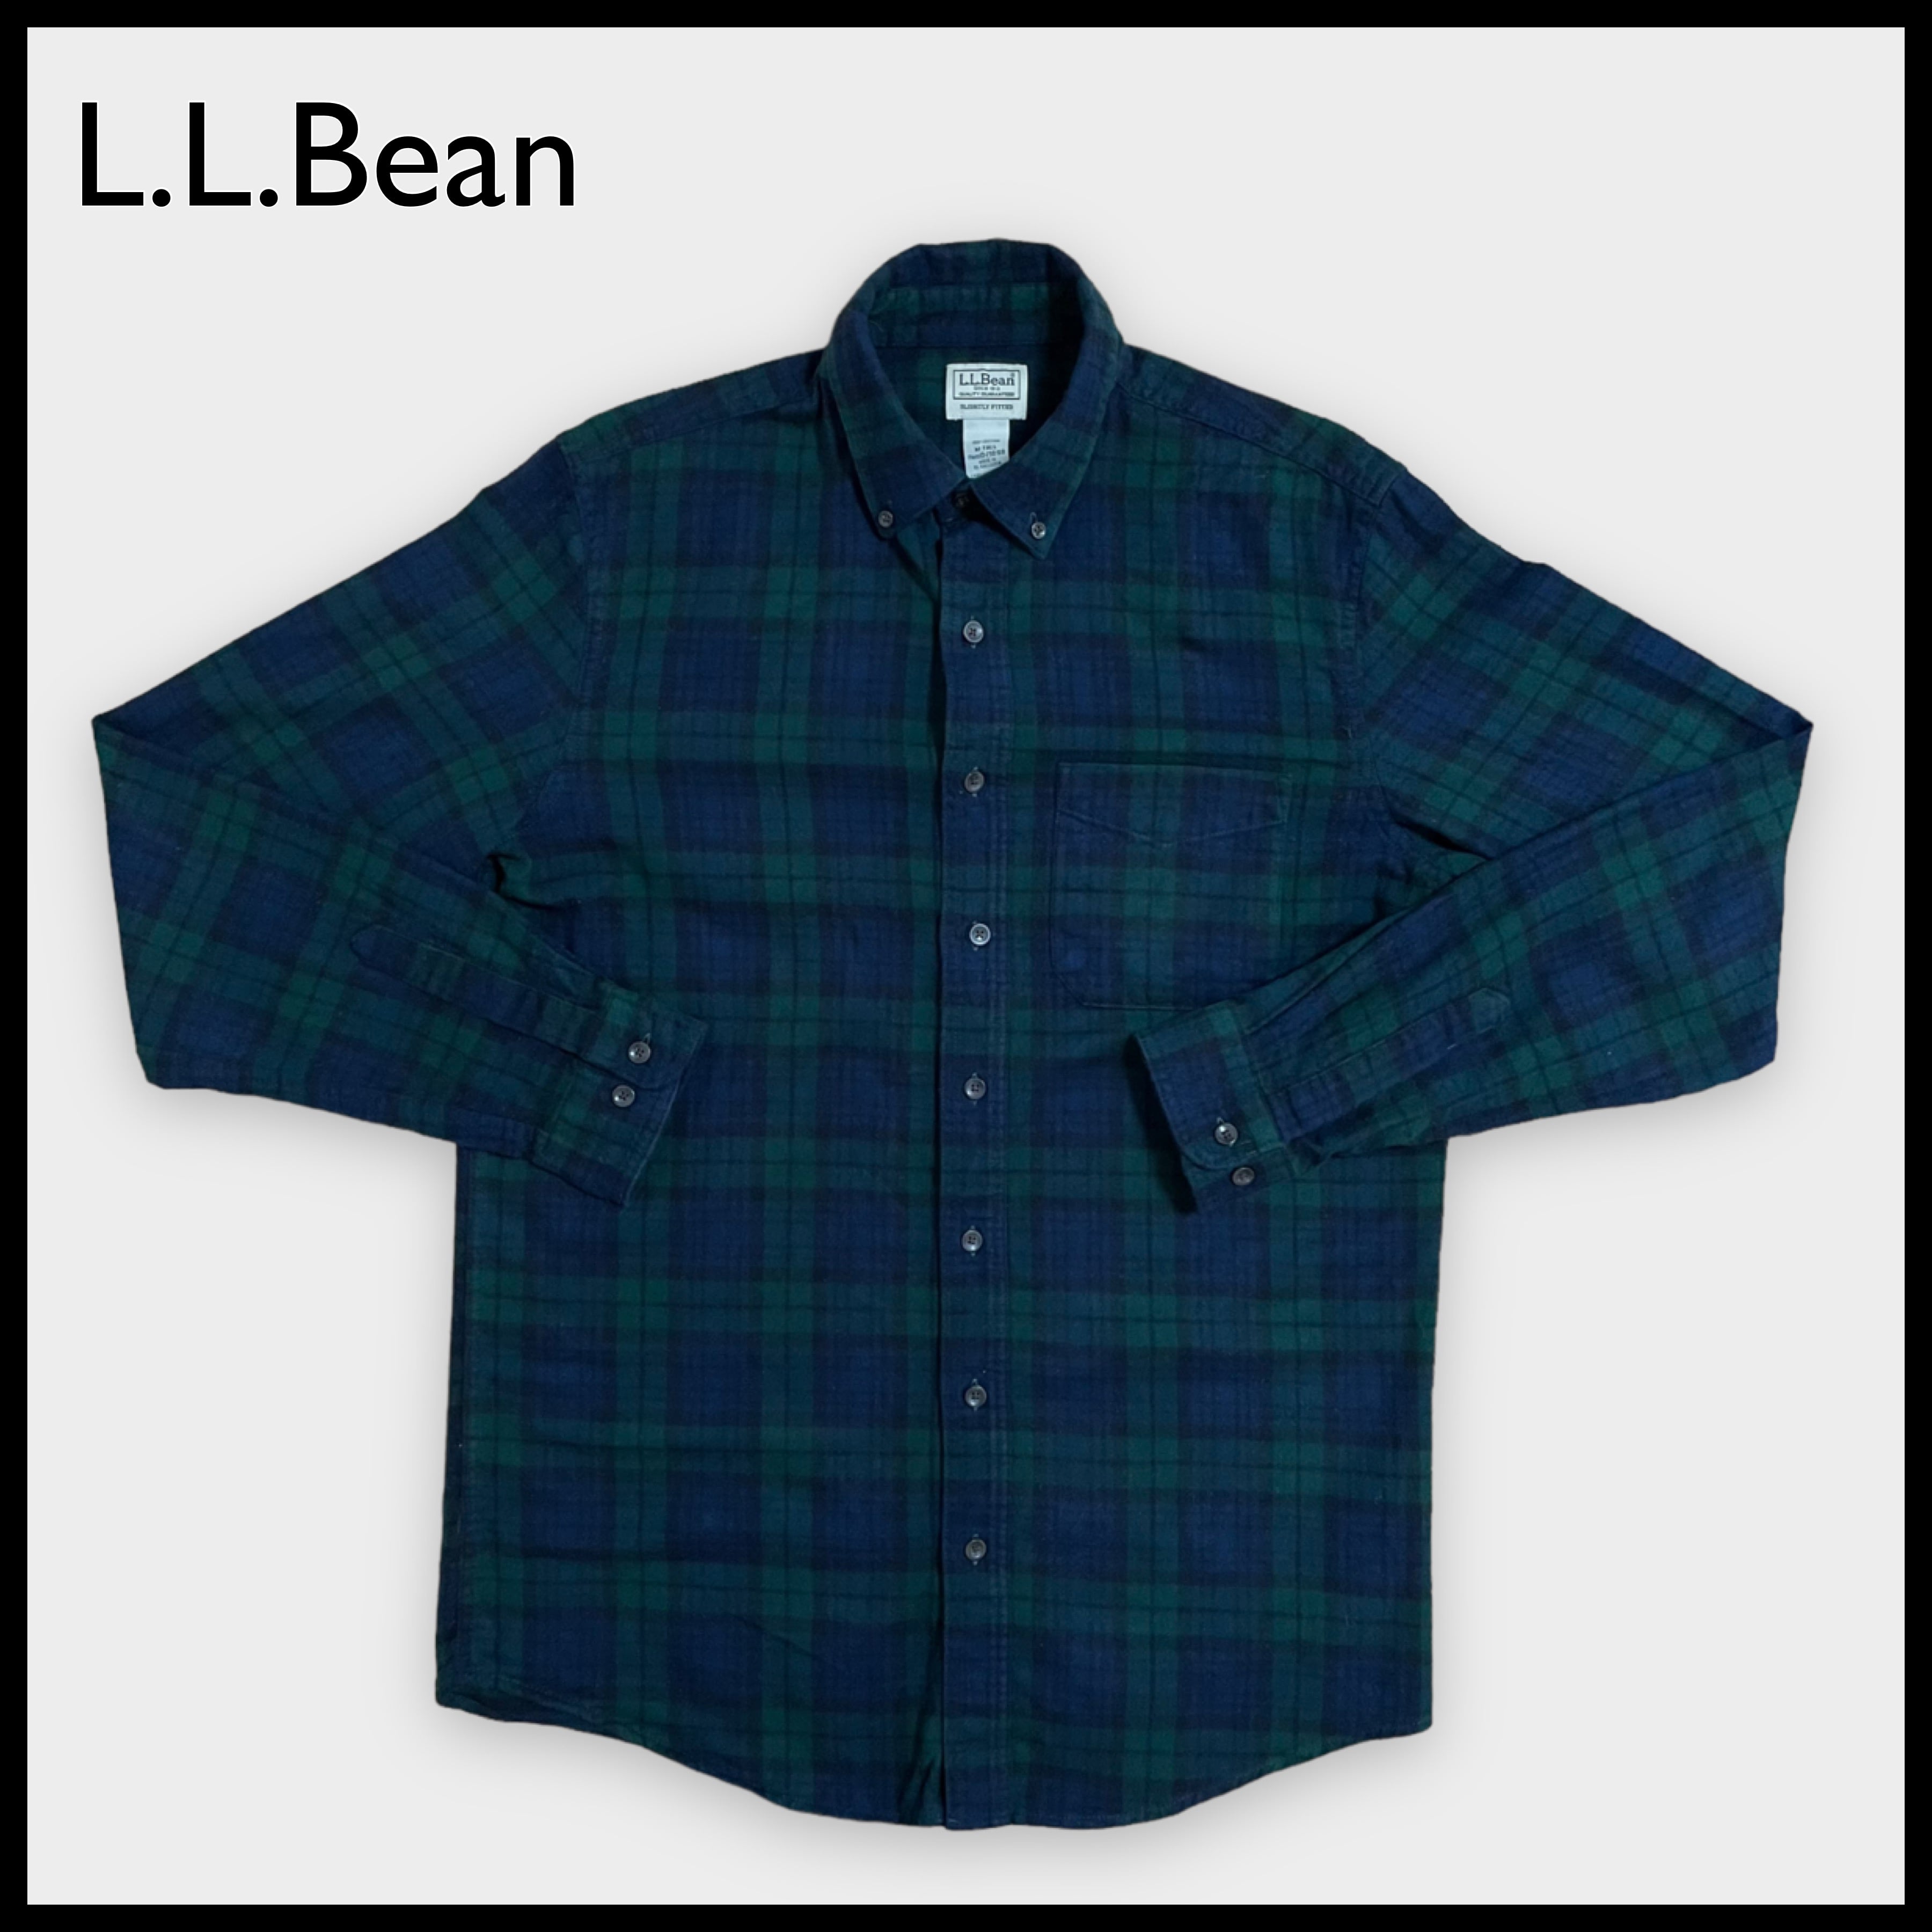 L.L.Bean】ネルシャツ 長袖シャツ フランネル ディープグリーン